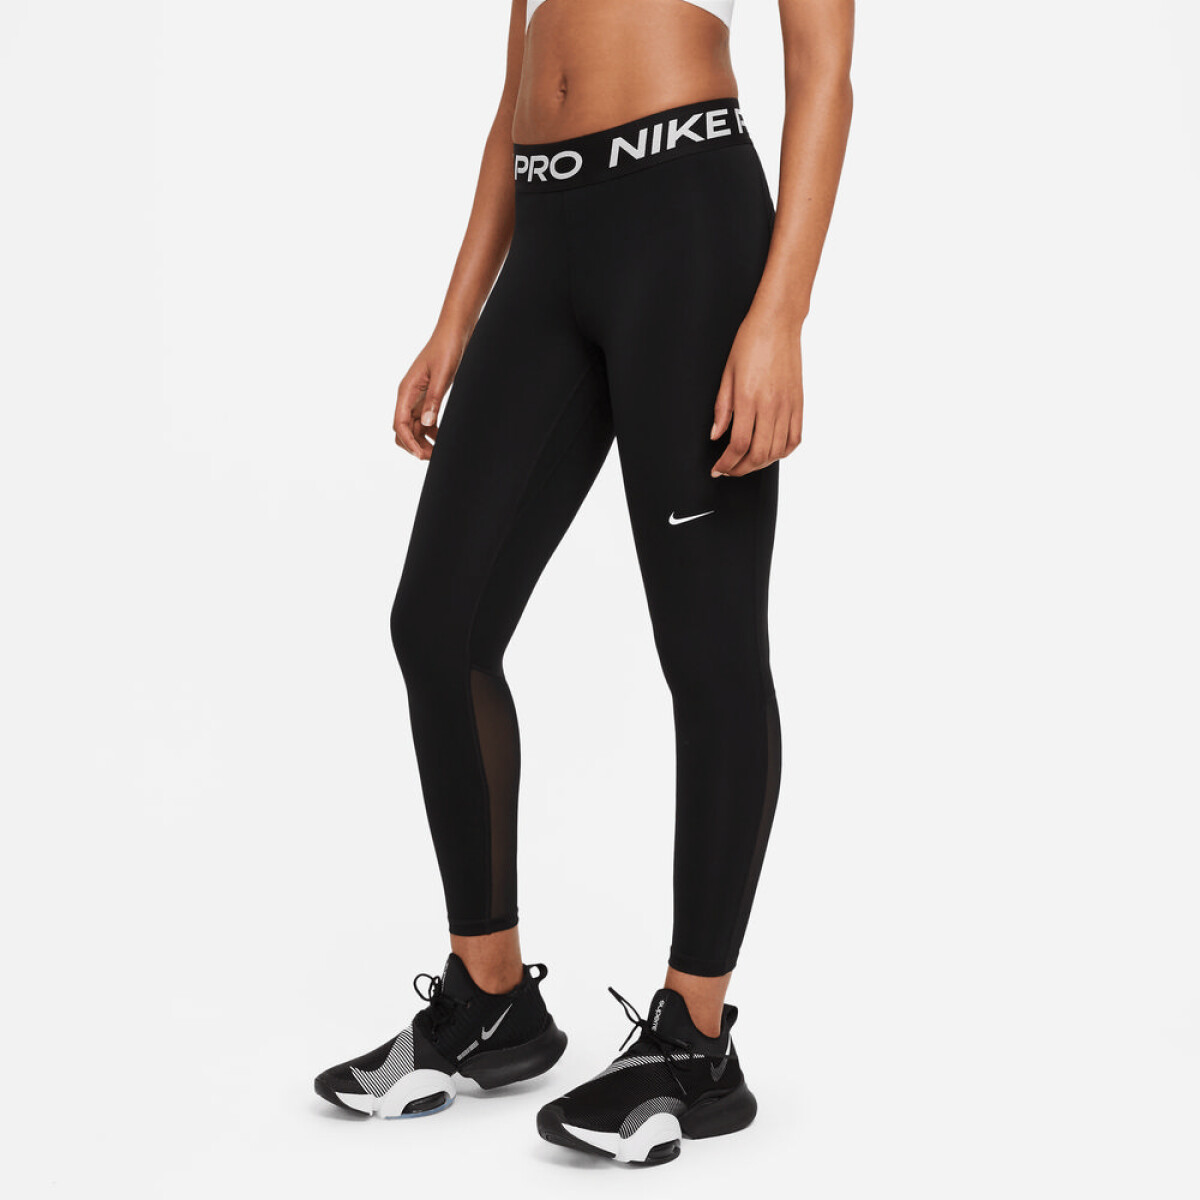 Calza Nike Pro 365 